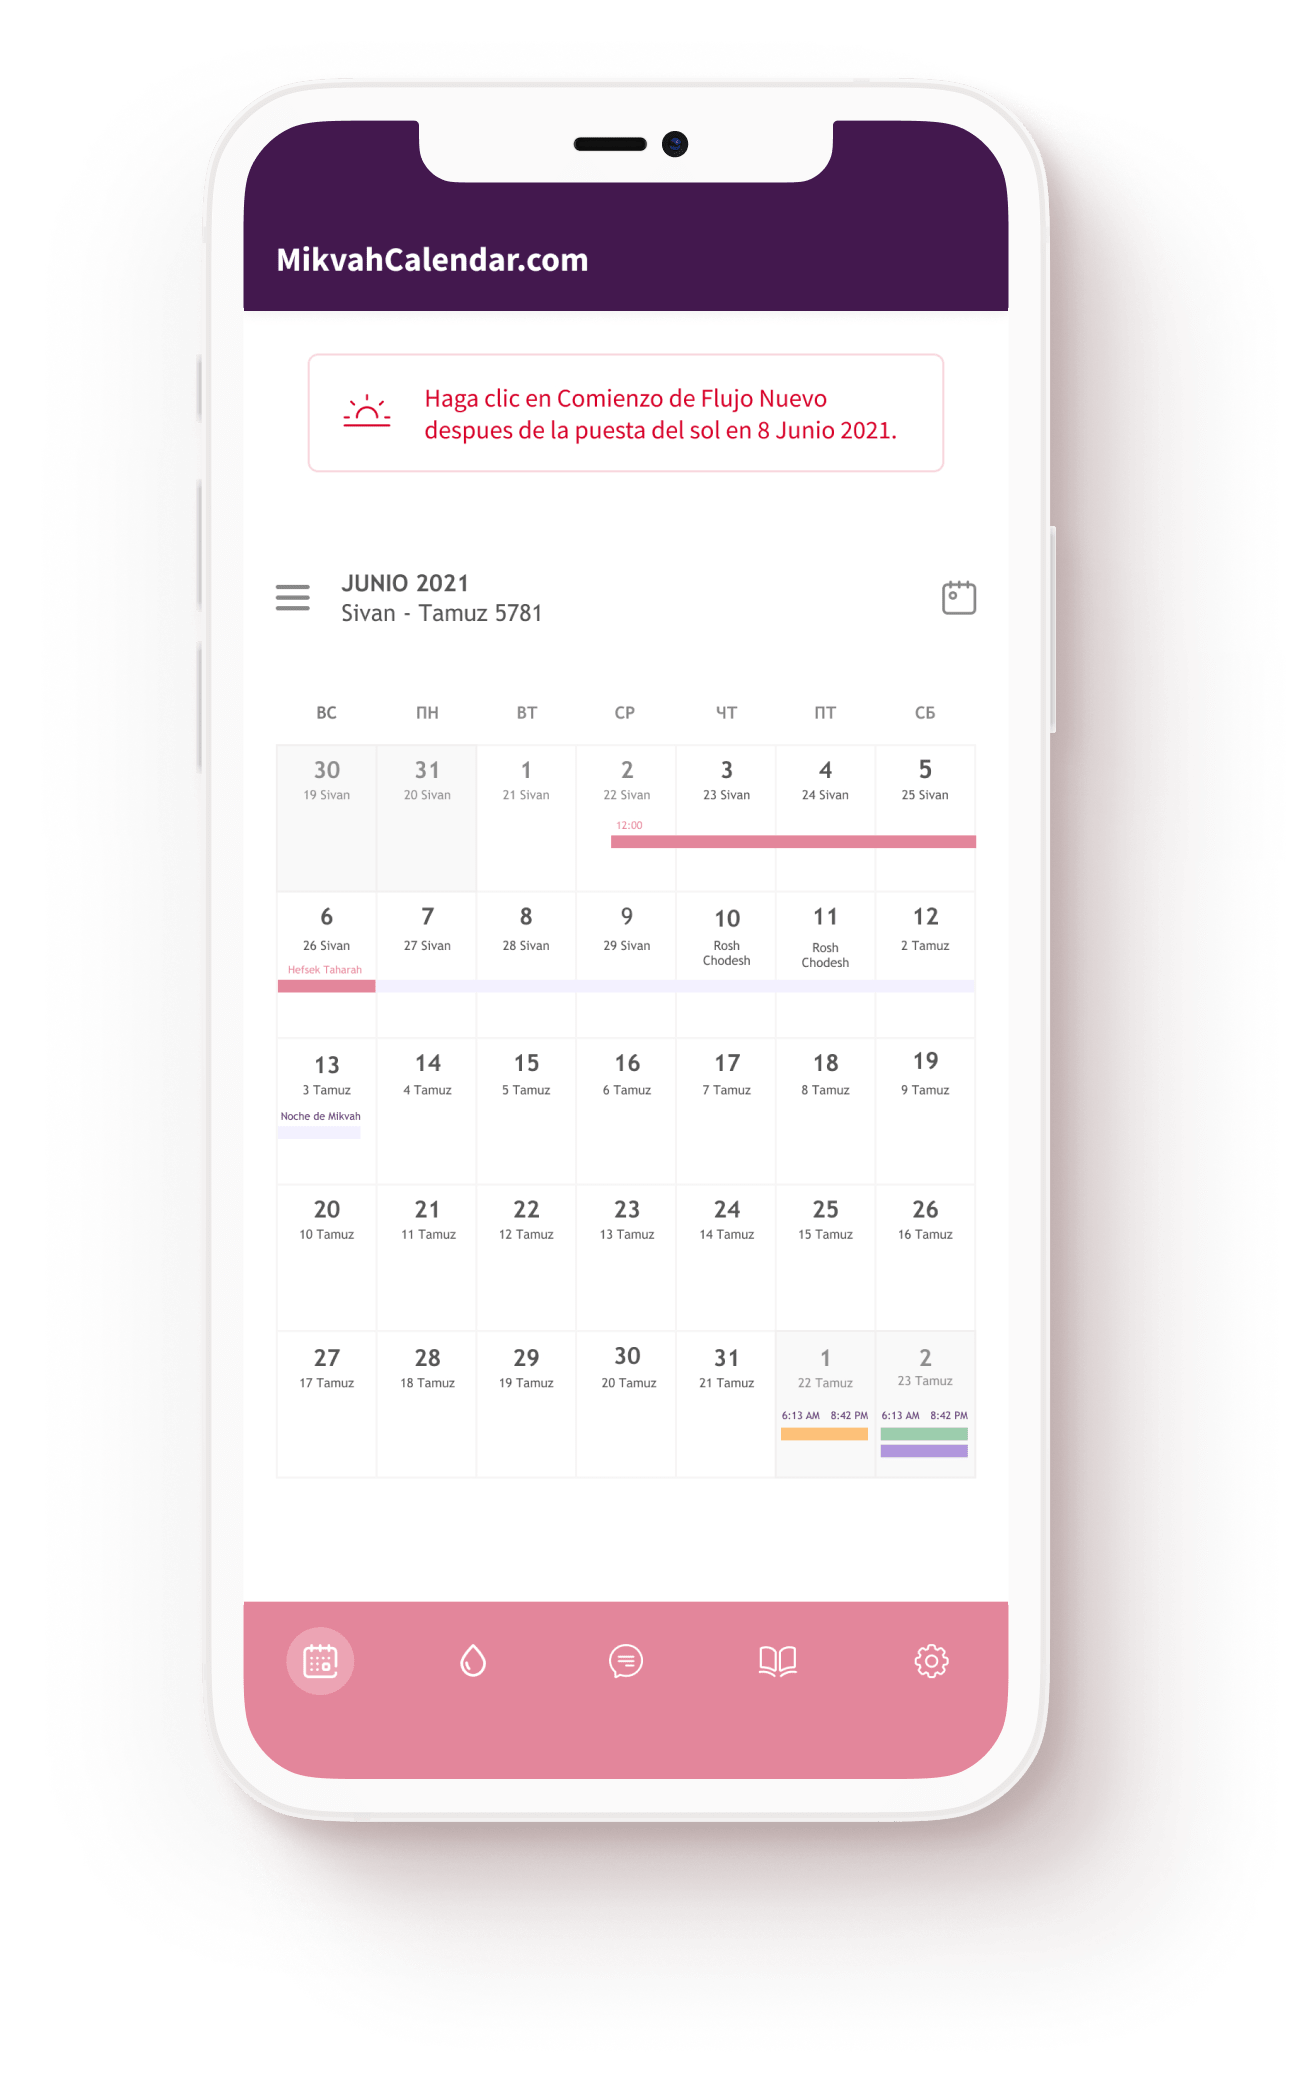 mikvah-calendar